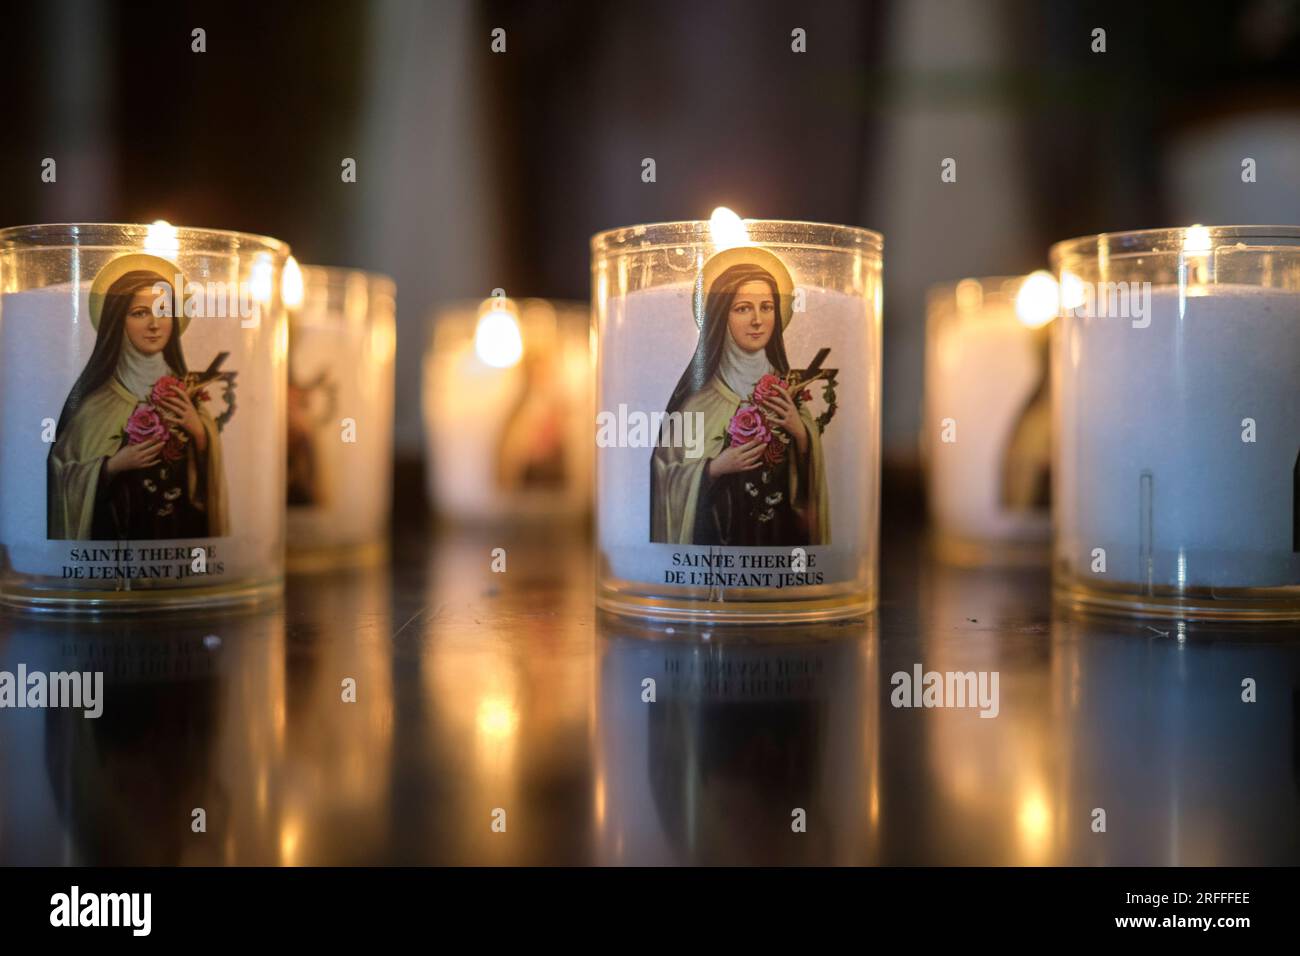 Sainte Therese De l'Enfant Jesus Candle nella cattedrale di Marsiglia in Francia Foto Stock